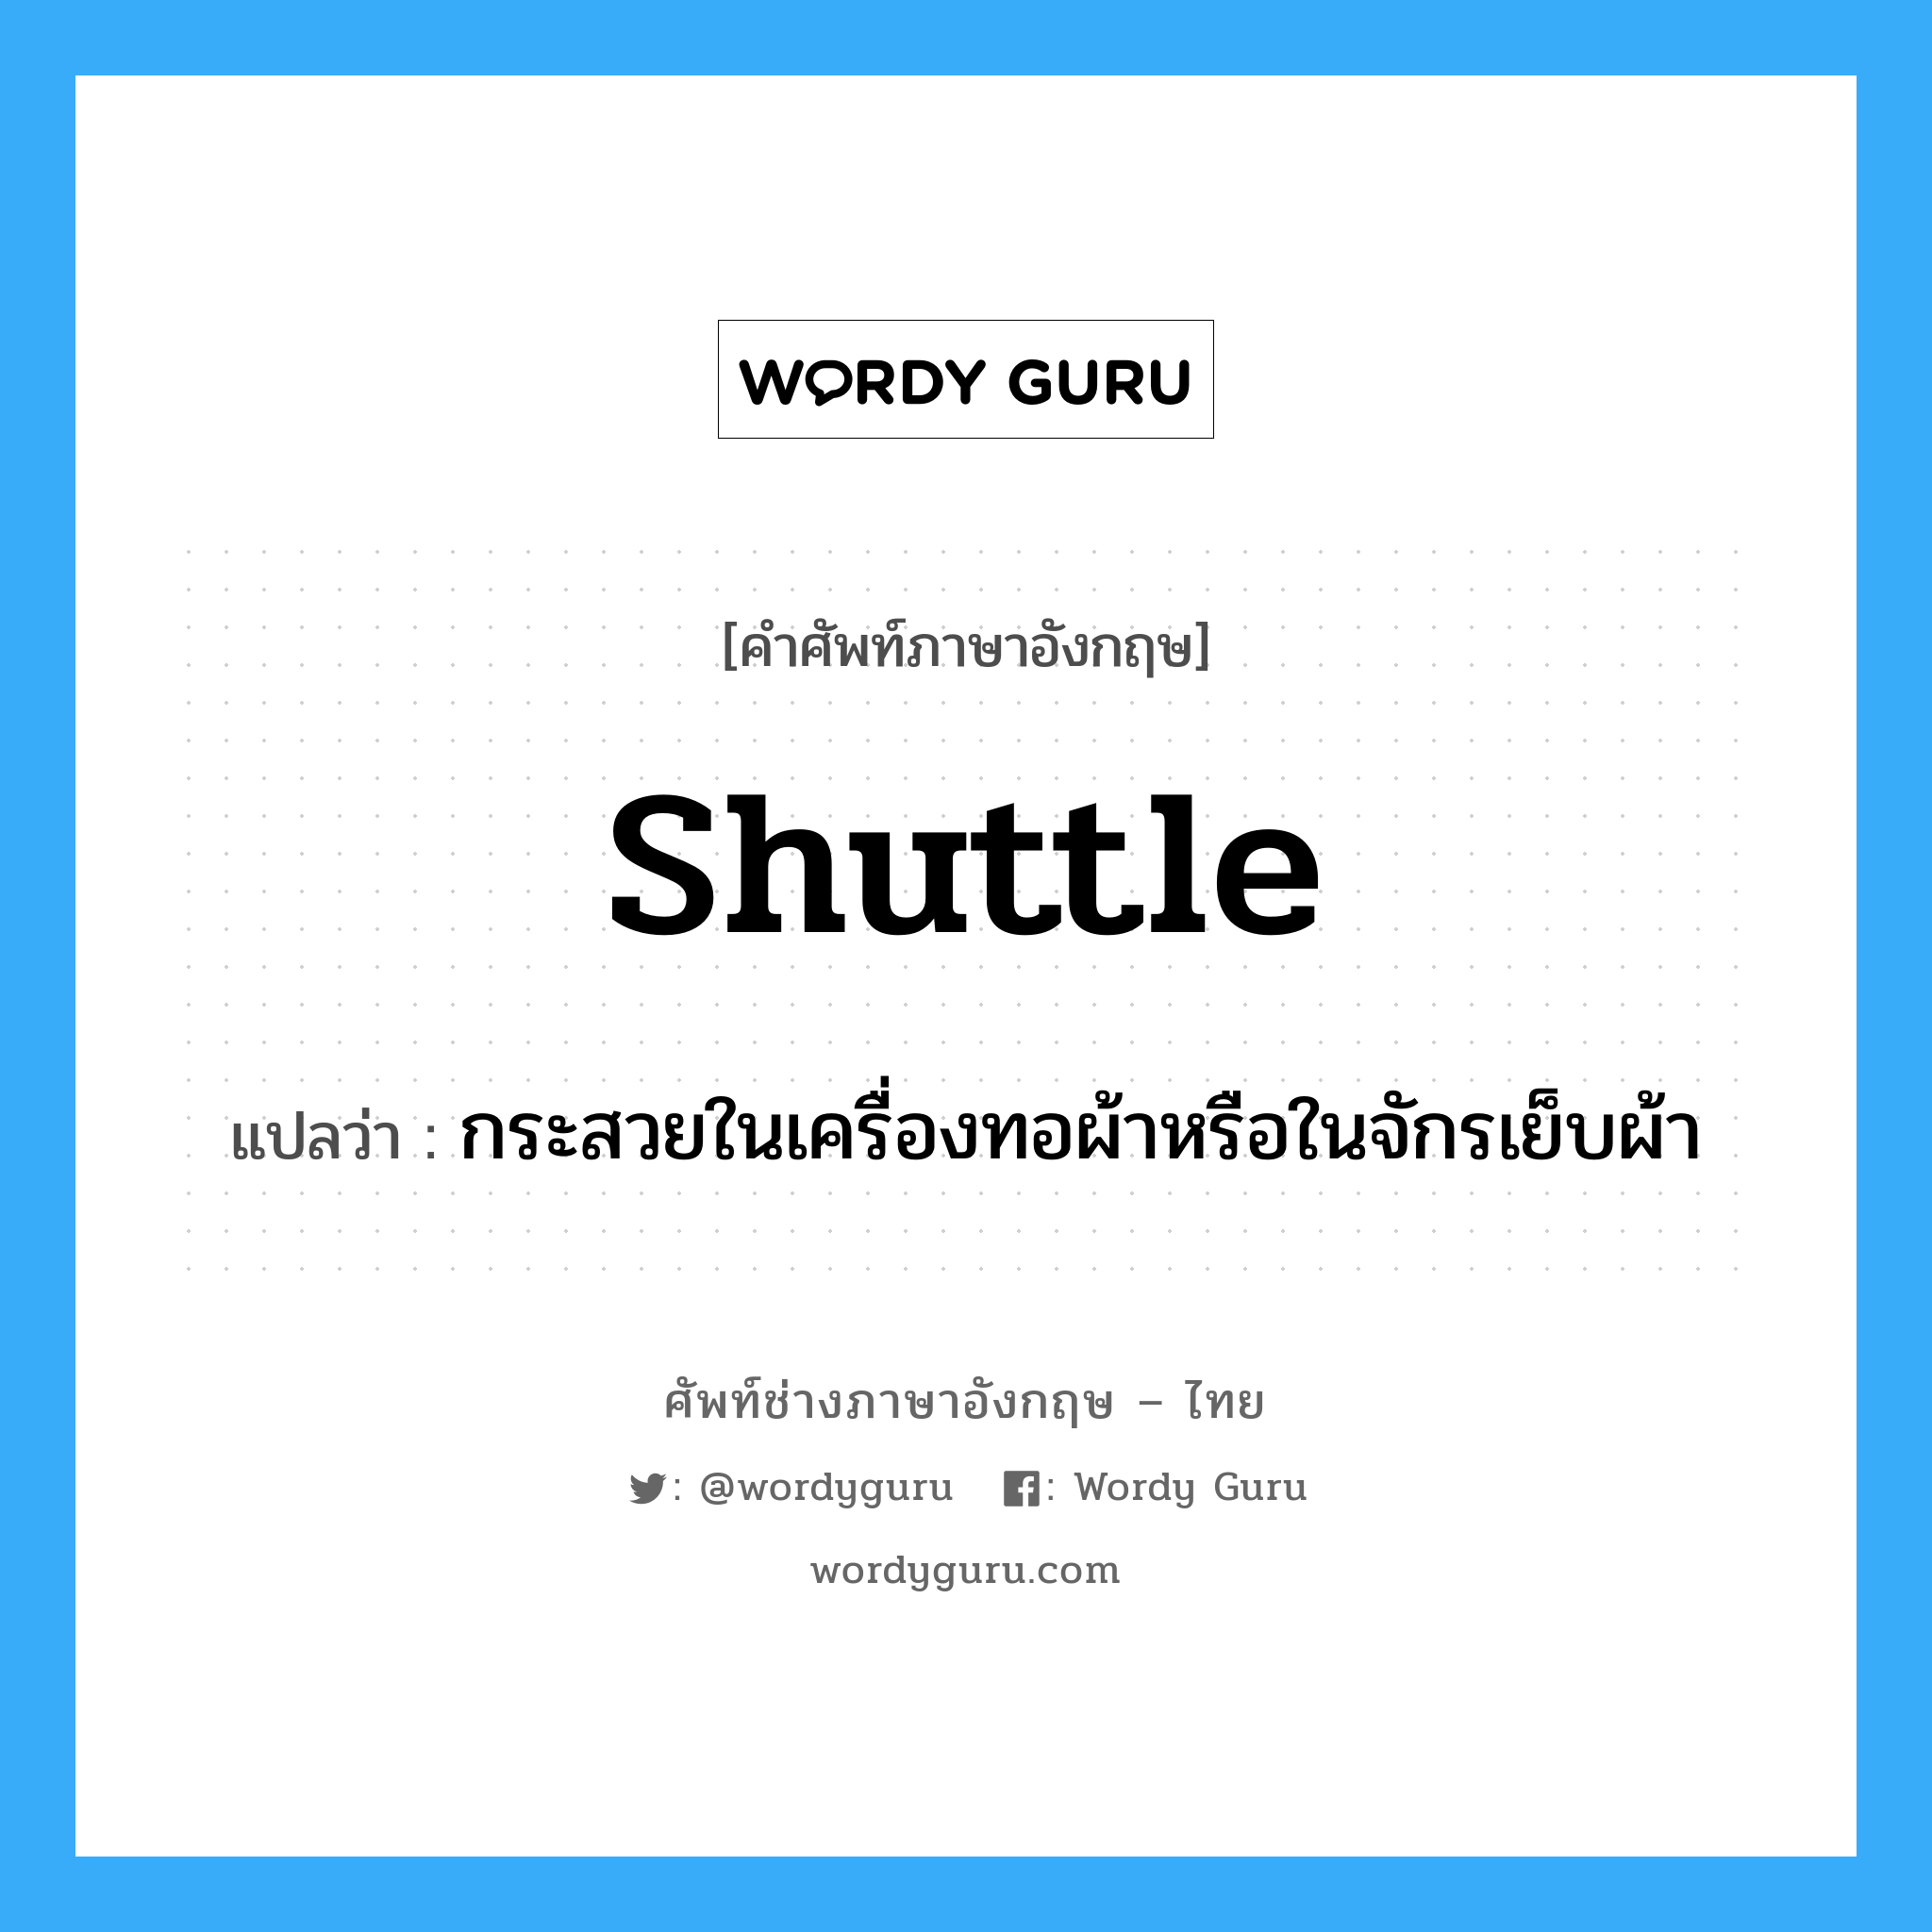 shuttle แปลว่า?, คำศัพท์ช่างภาษาอังกฤษ - ไทย shuttle คำศัพท์ภาษาอังกฤษ shuttle แปลว่า กระสวยในเครื่องทอผ้าหรือในจักรเย็บผ้า